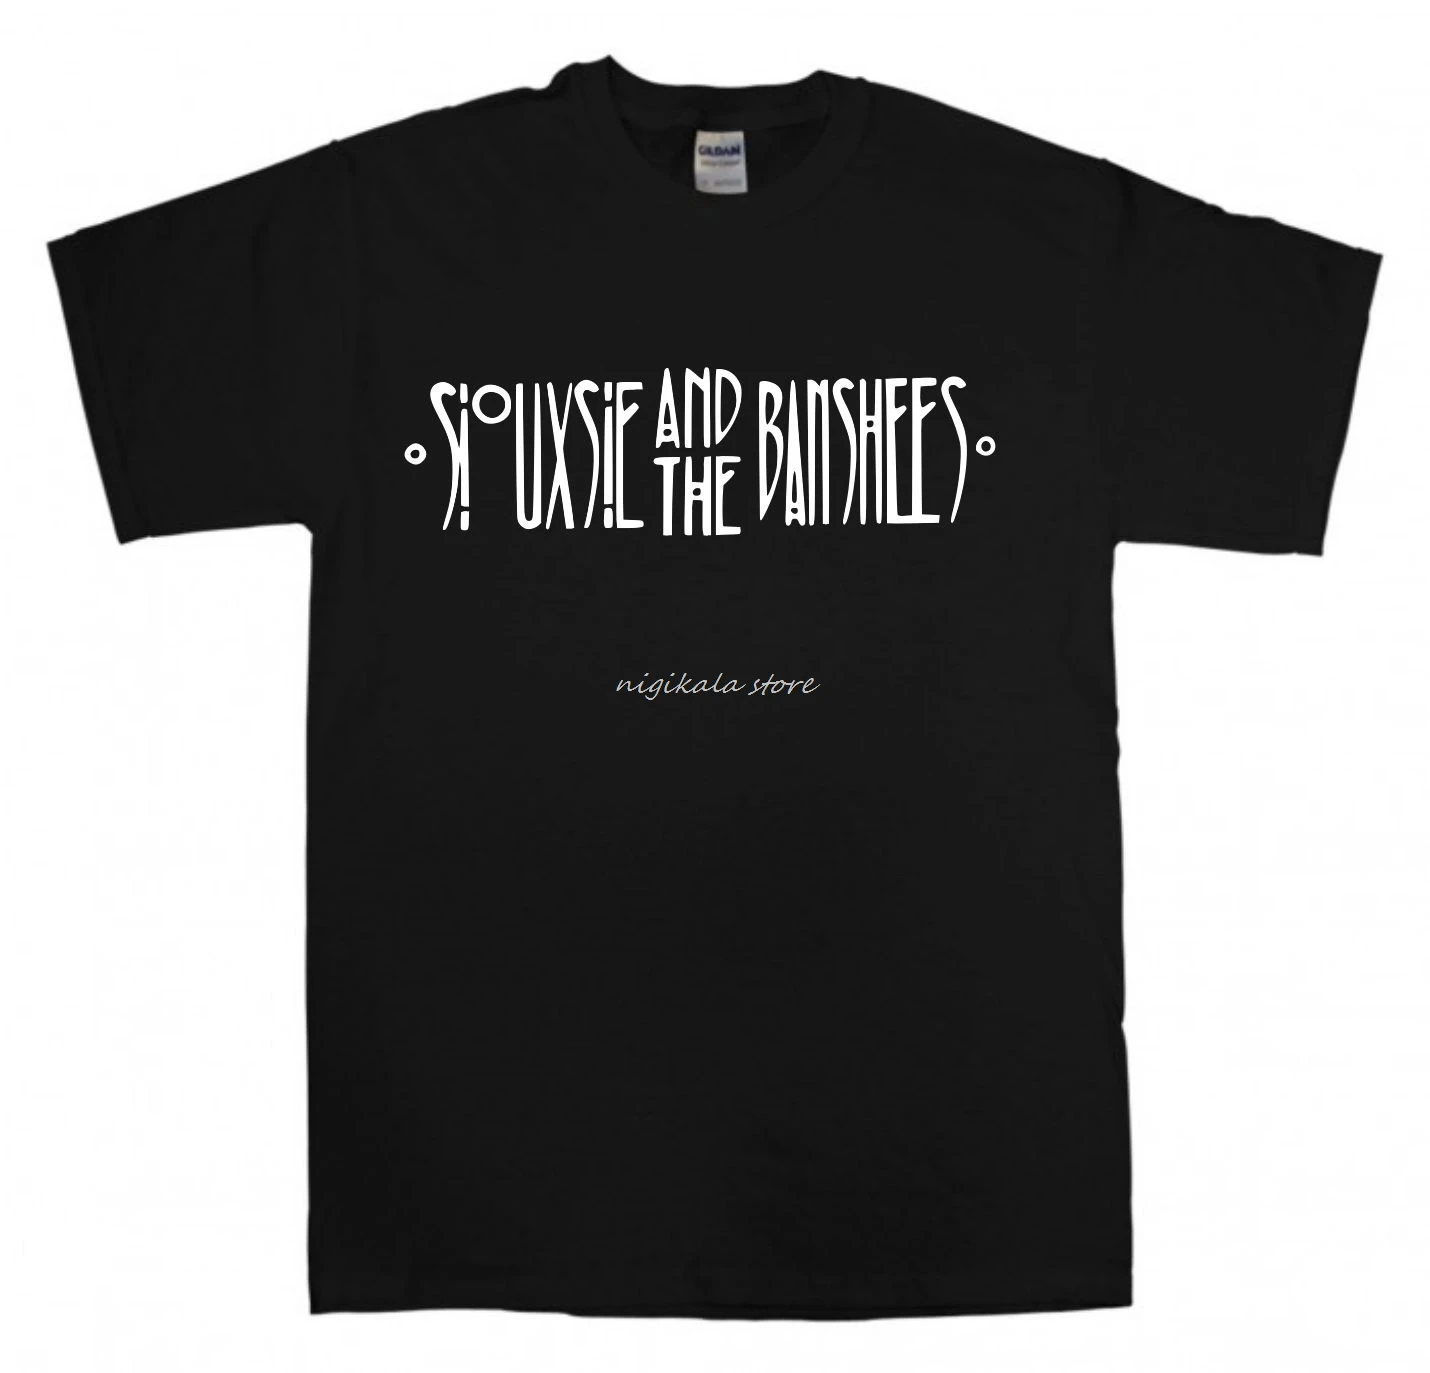 Футболка Siouxsie and The Banshees, Новая Черная футболка с логотипом в стиле Готический панк, Футболка The Cure с коротким рукавом, поступила в продажу Новая Летняя Изображение 0